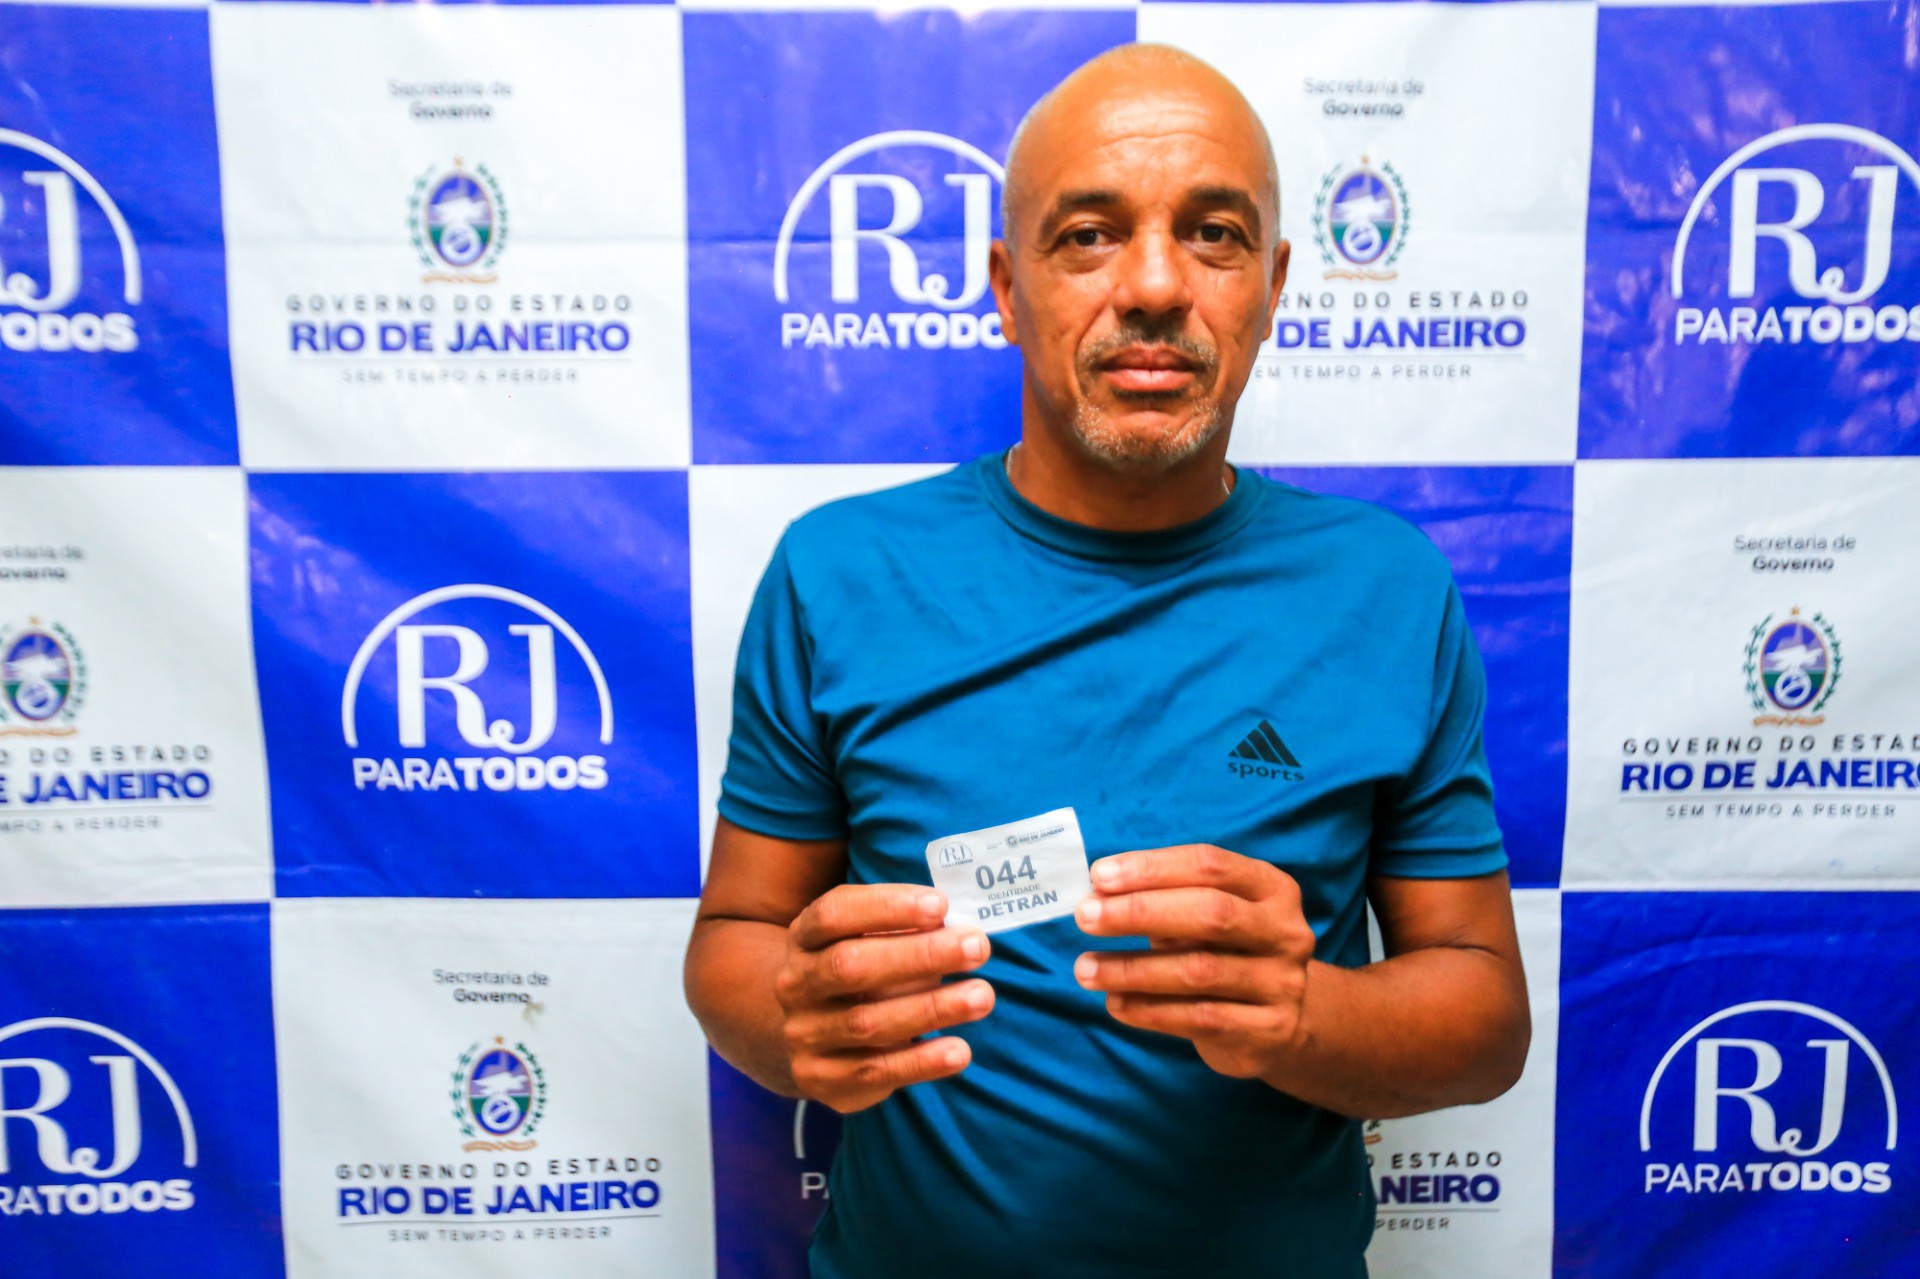 O pedreiro Anderson Nogueira, conseguiu tirar a segunda via de sua identidade no RJ para Todos - Rafael Barreto / PMBR